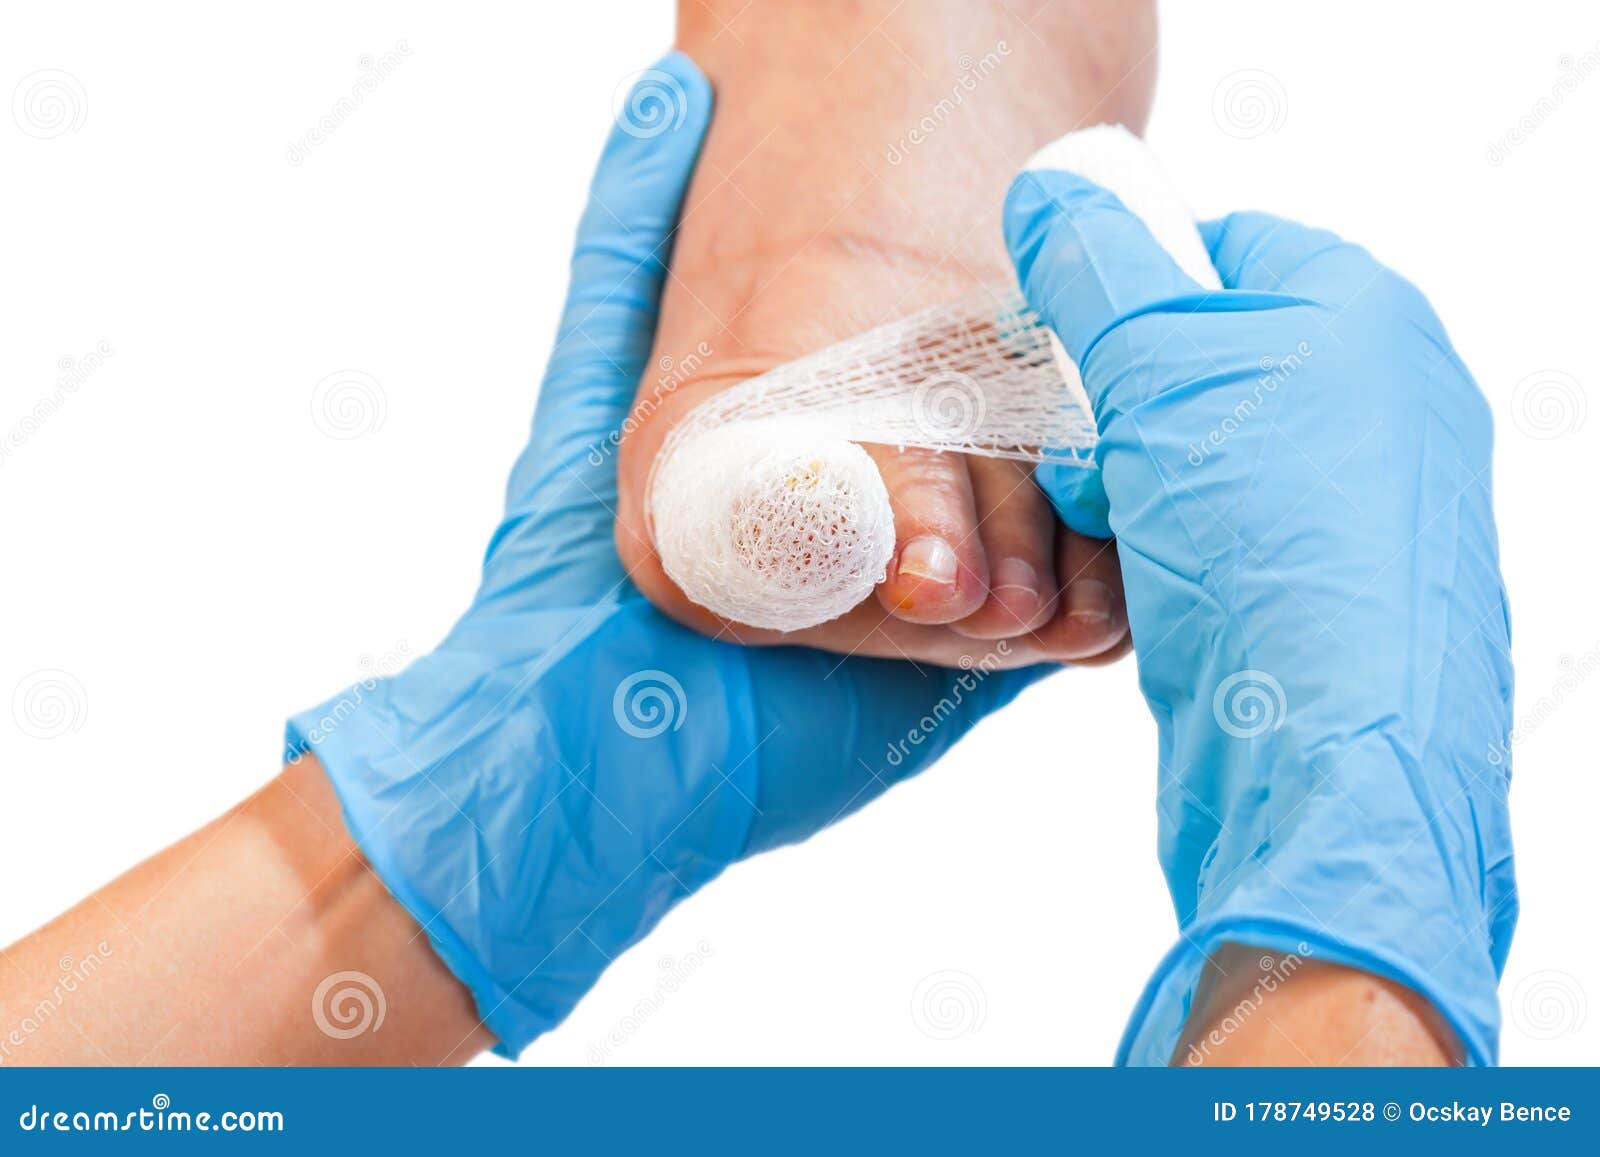 injured black toe nail design